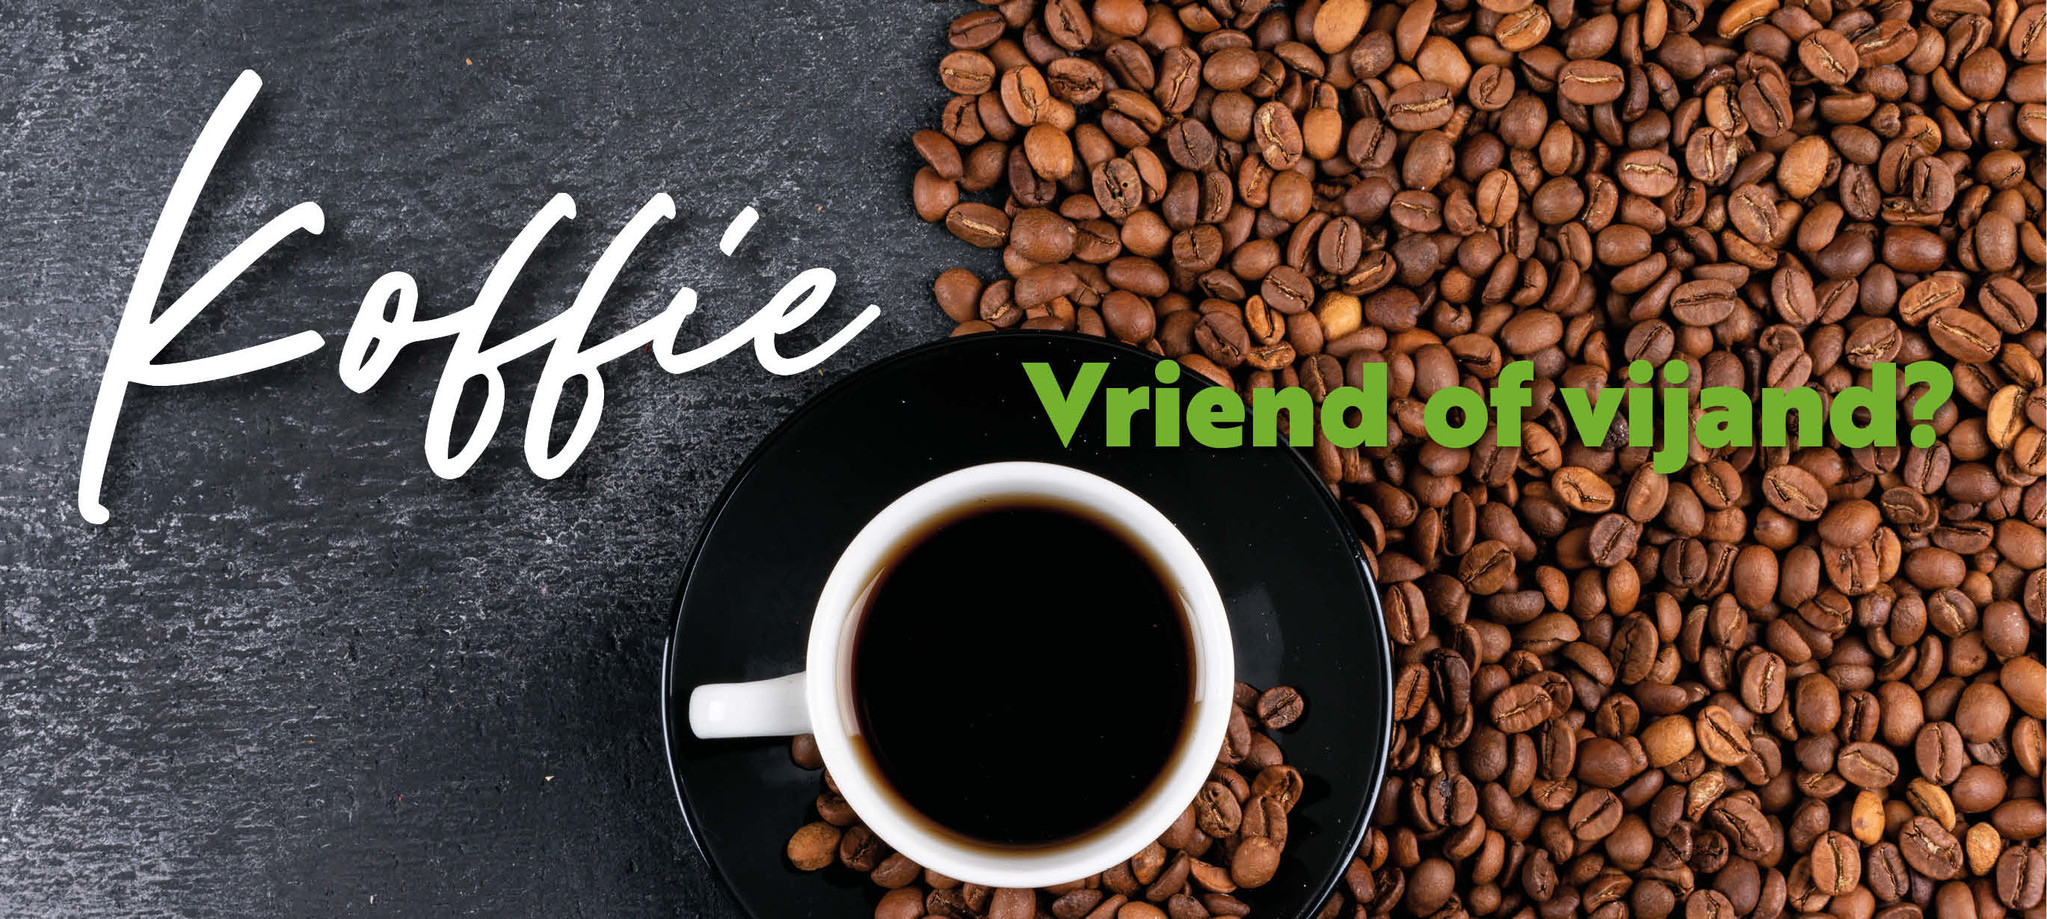 Koffie, vriend of vijand?